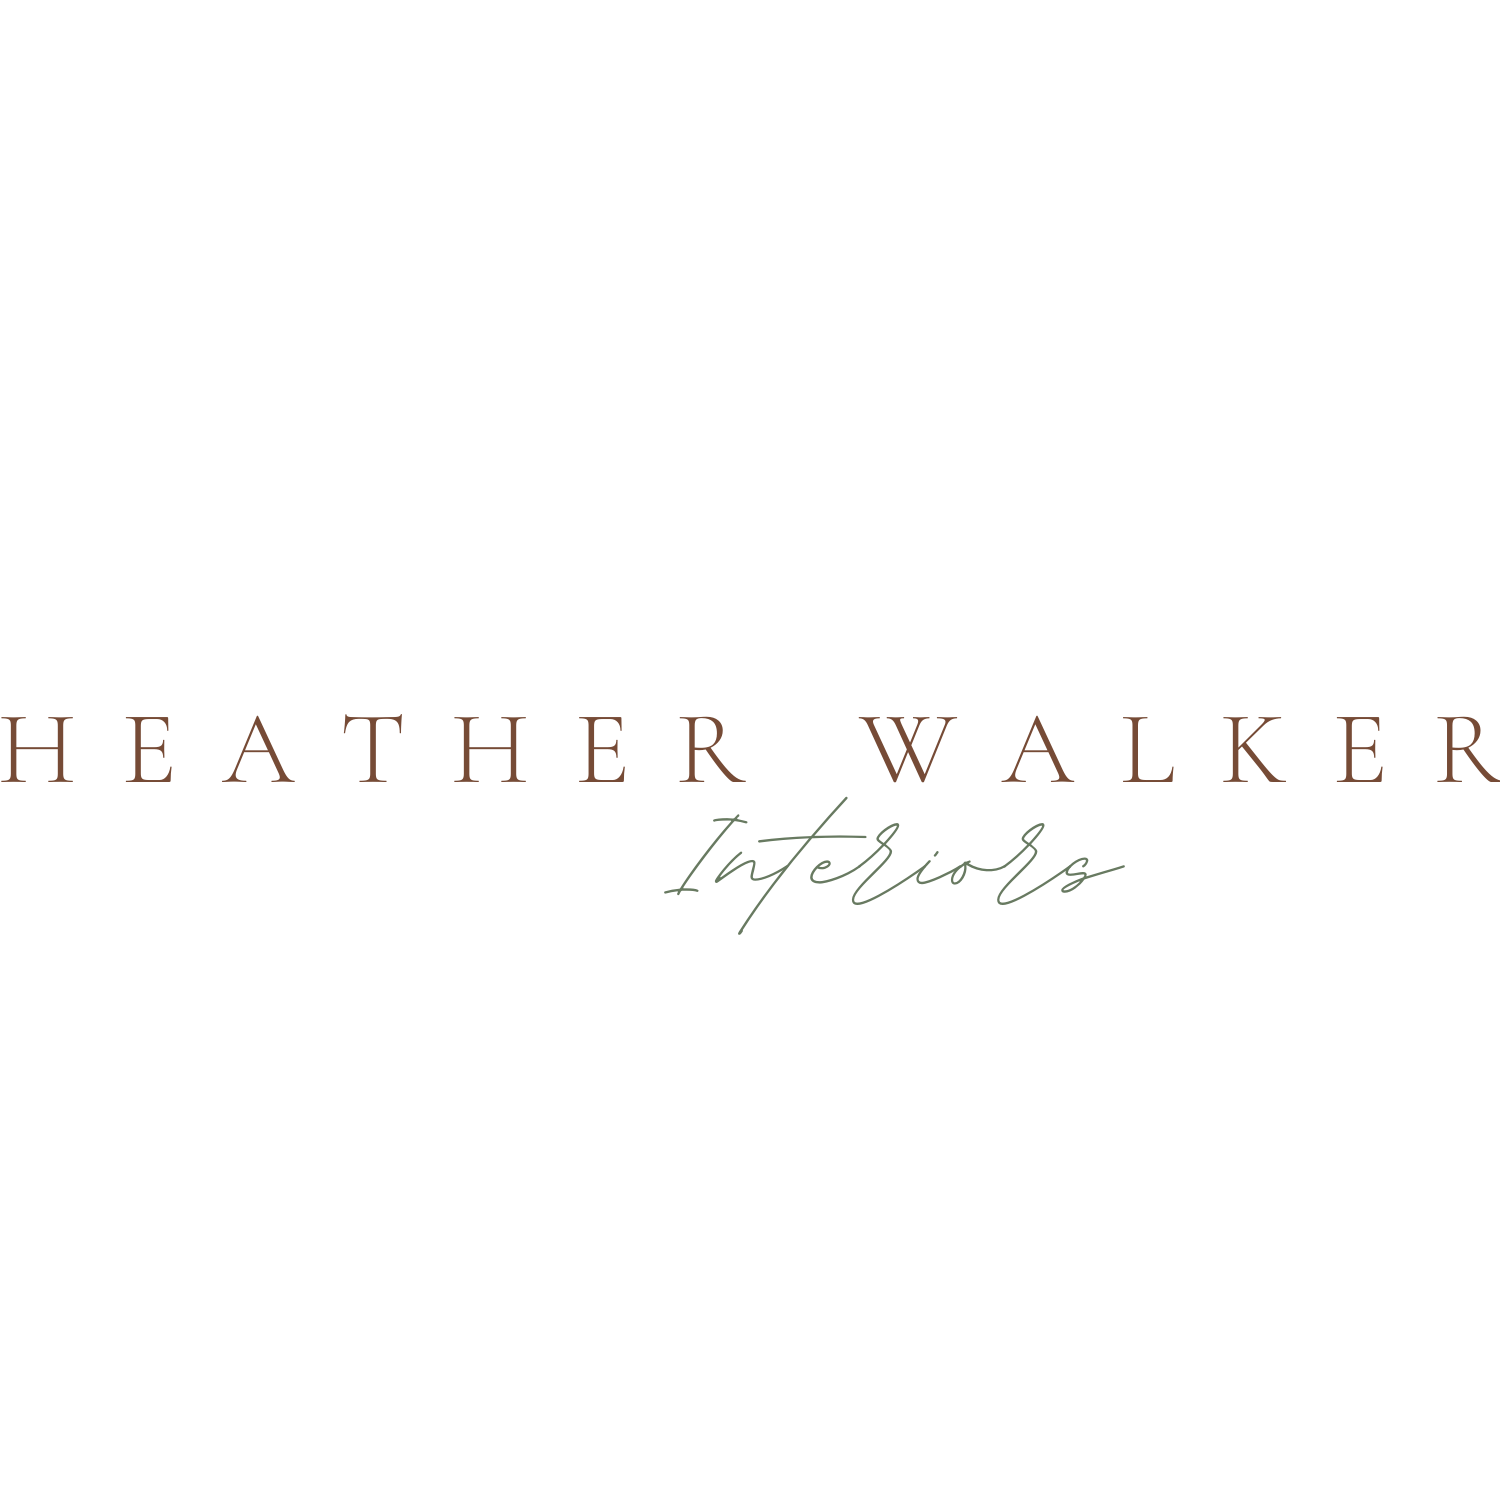 Heather Walker Interiors